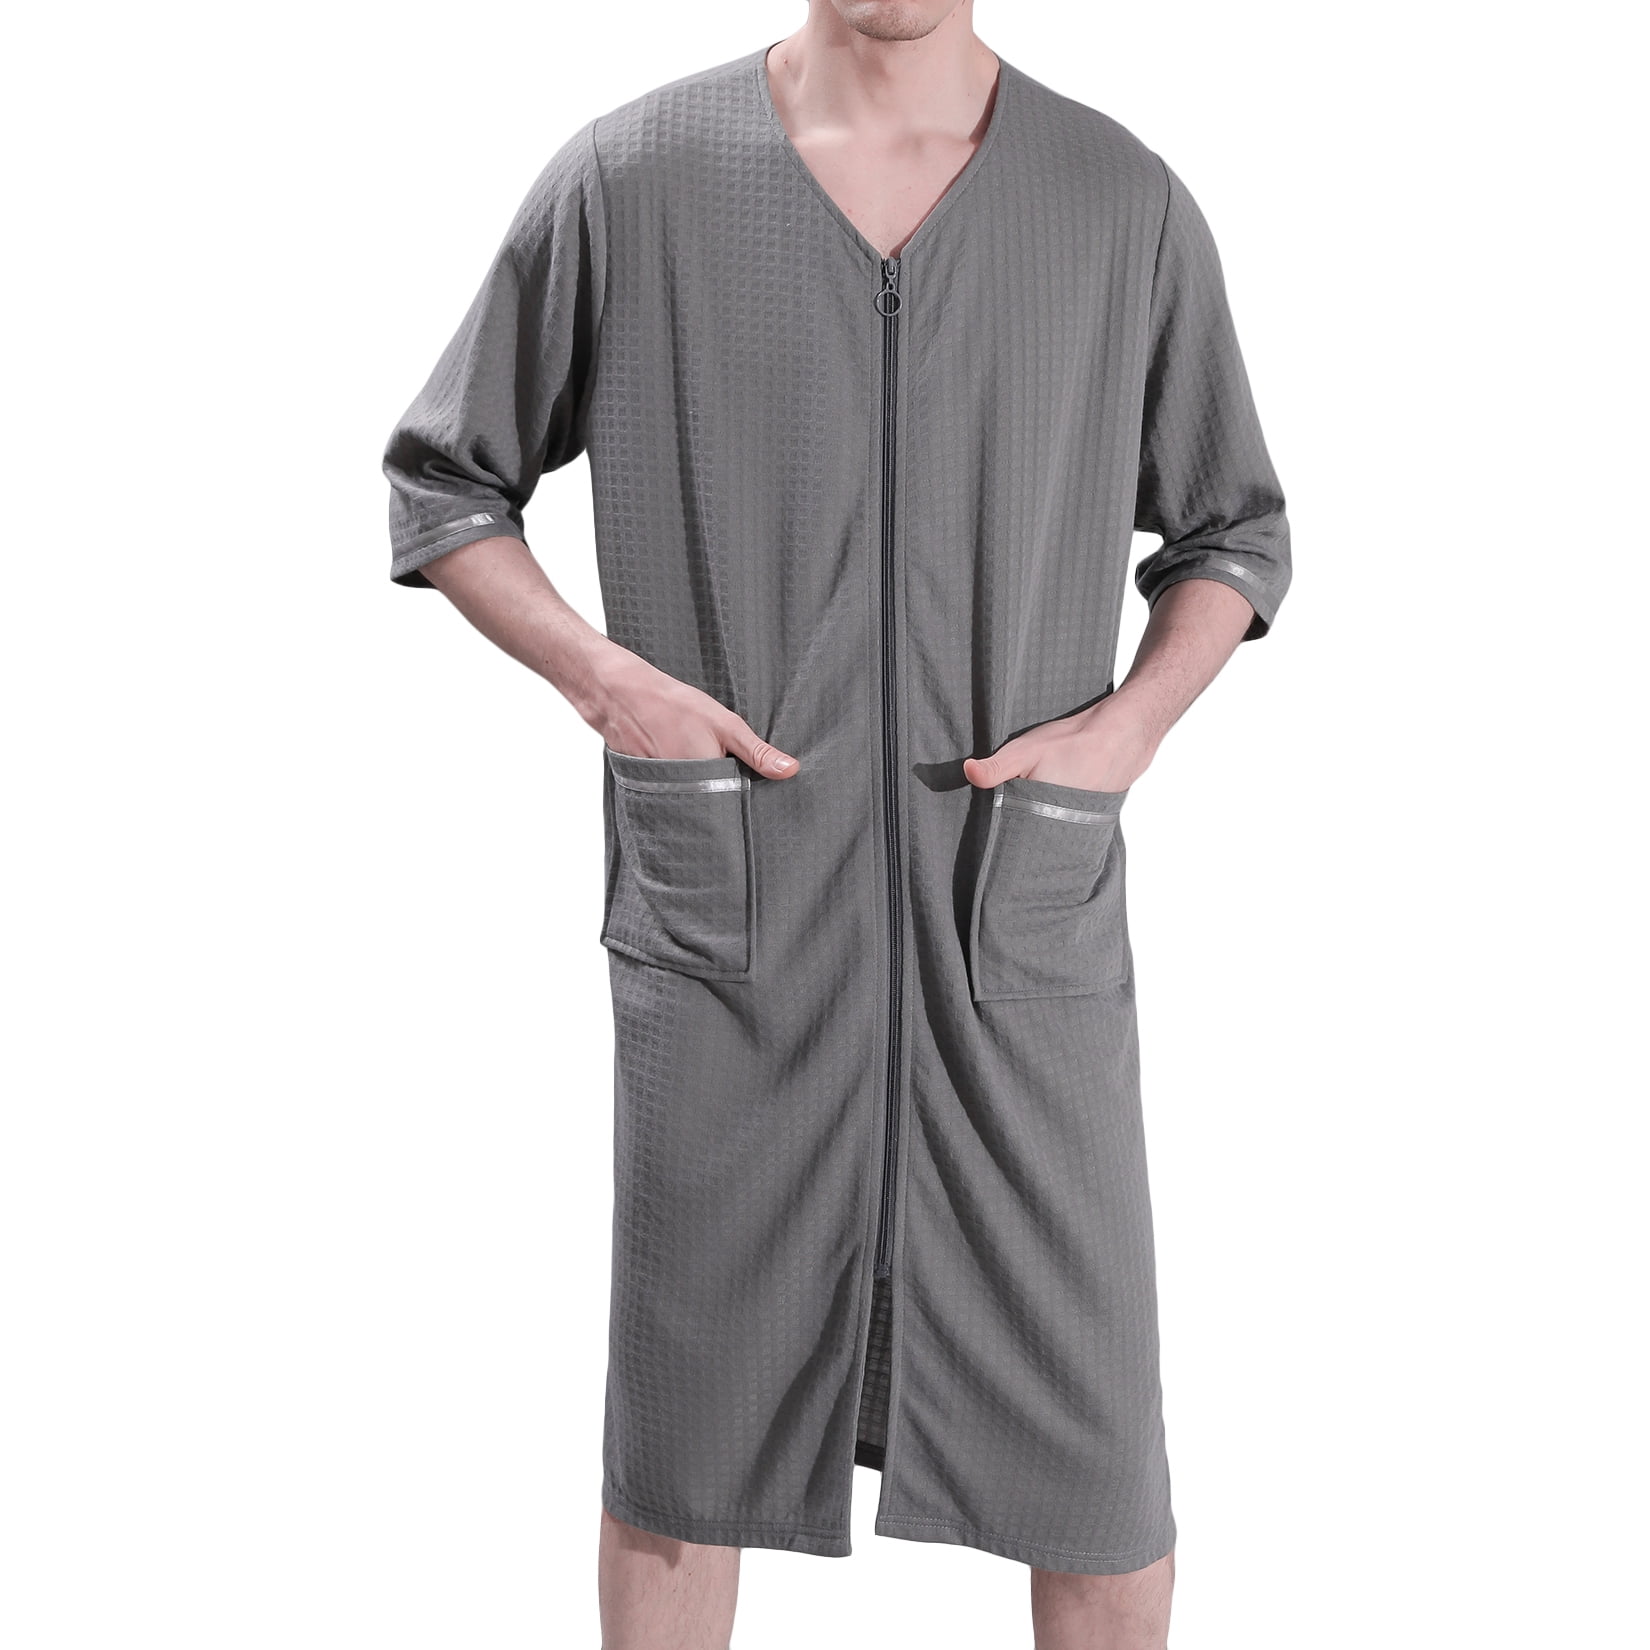 amidoa Men's Funny Printed Polo Shirt Tops Moisture Wicking Tee